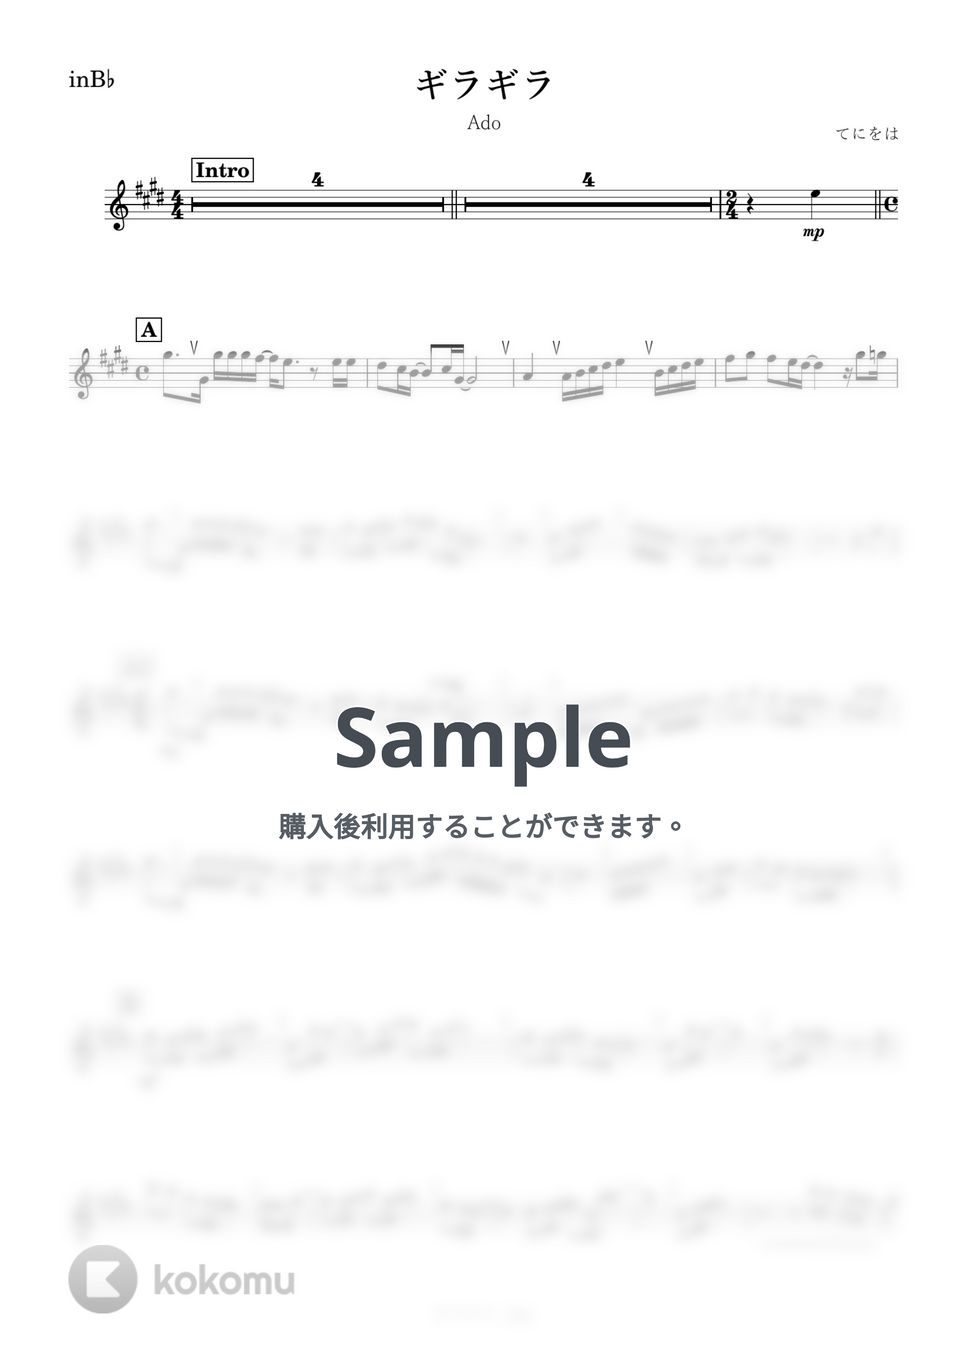 Ado - ギラギラ (B♭) by kanamusic